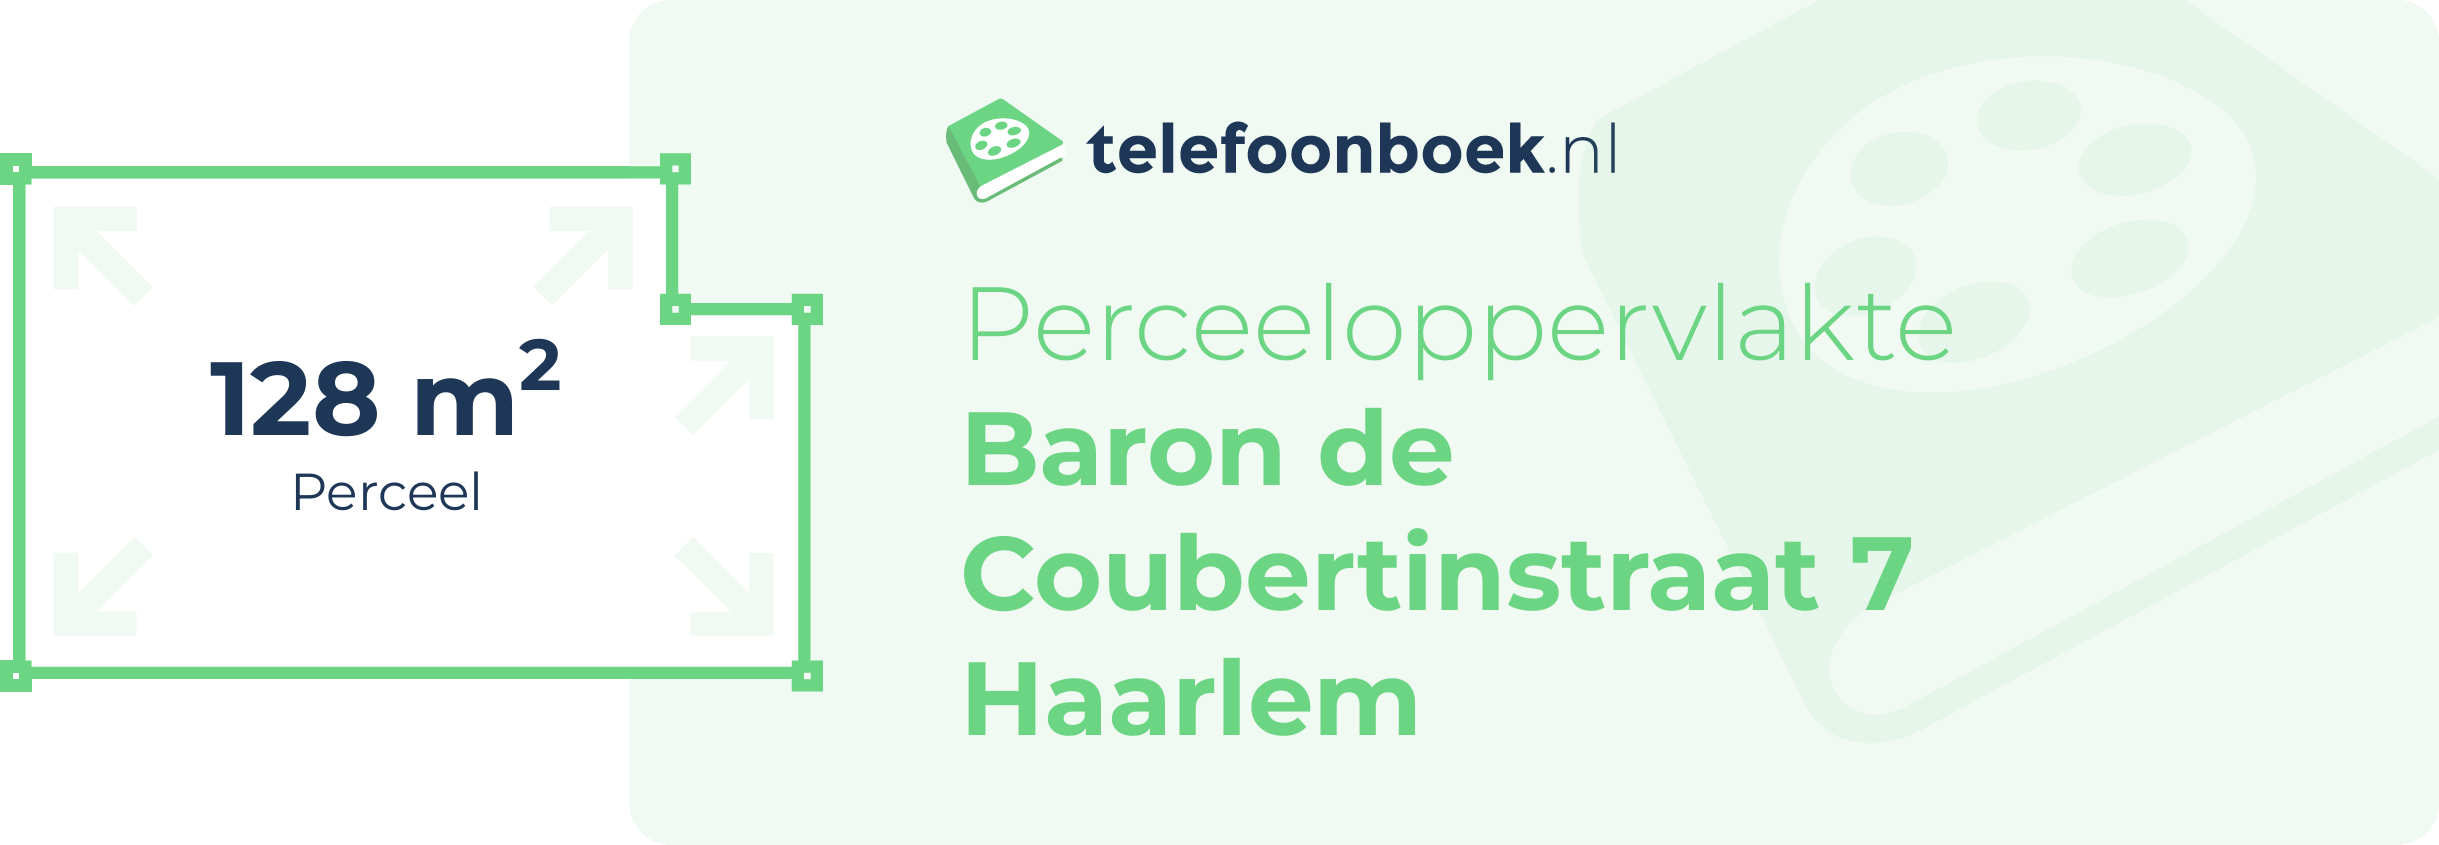 Perceeloppervlakte Baron De Coubertinstraat 7 Haarlem